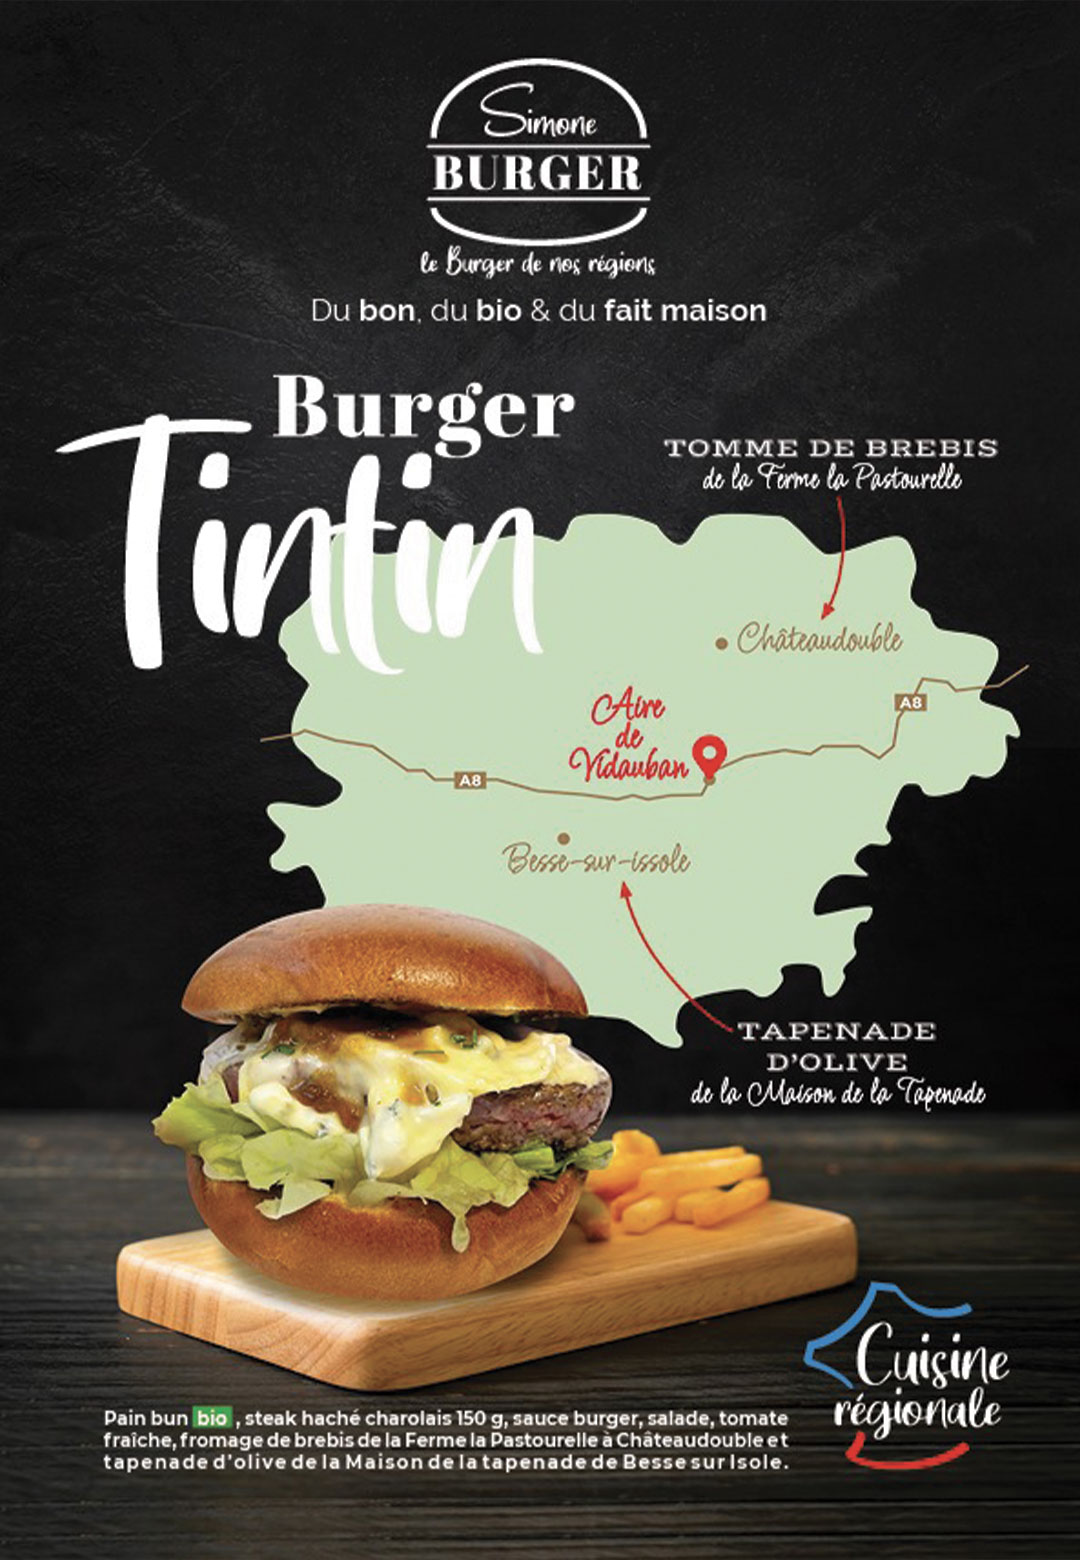 Le Burger Tintin de chez Simone Burger utilise des produits de la région de Vidauban